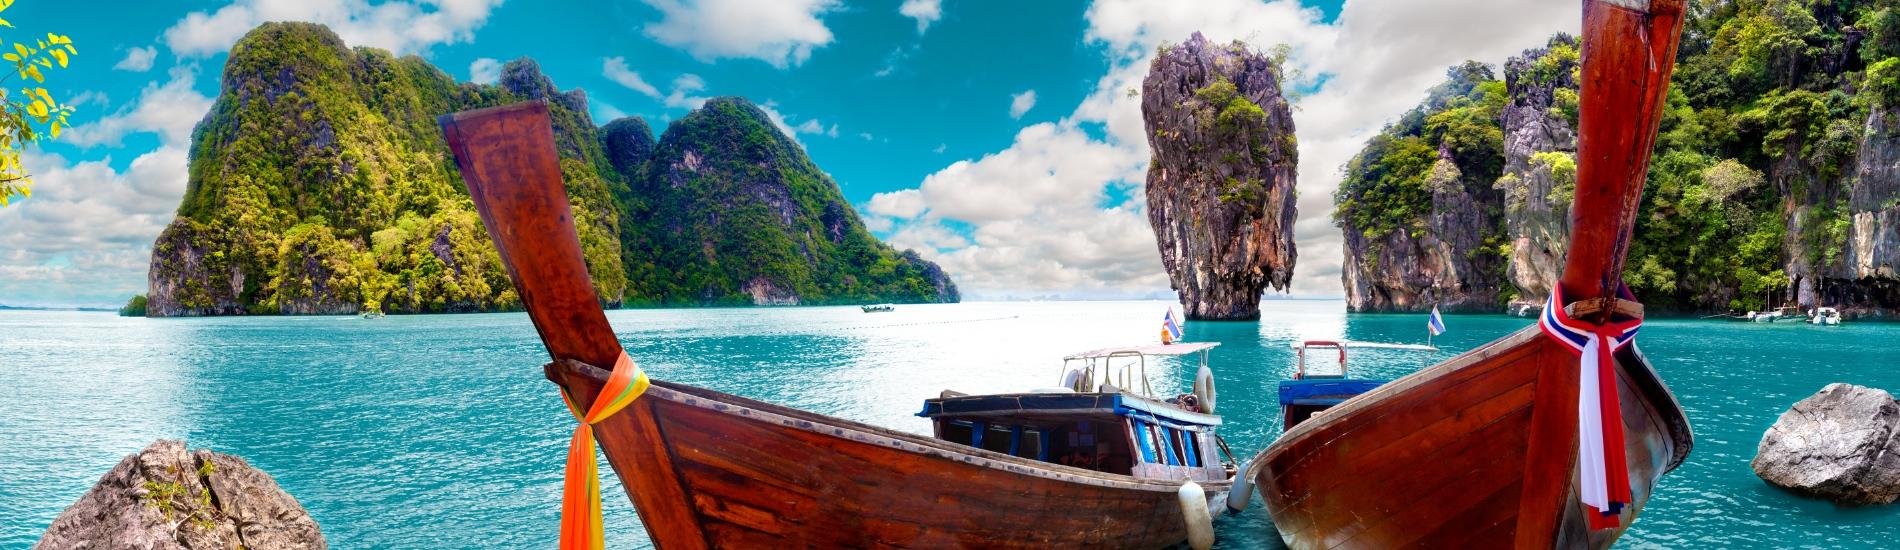 Vacanze a Phuket | Eden Viaggi